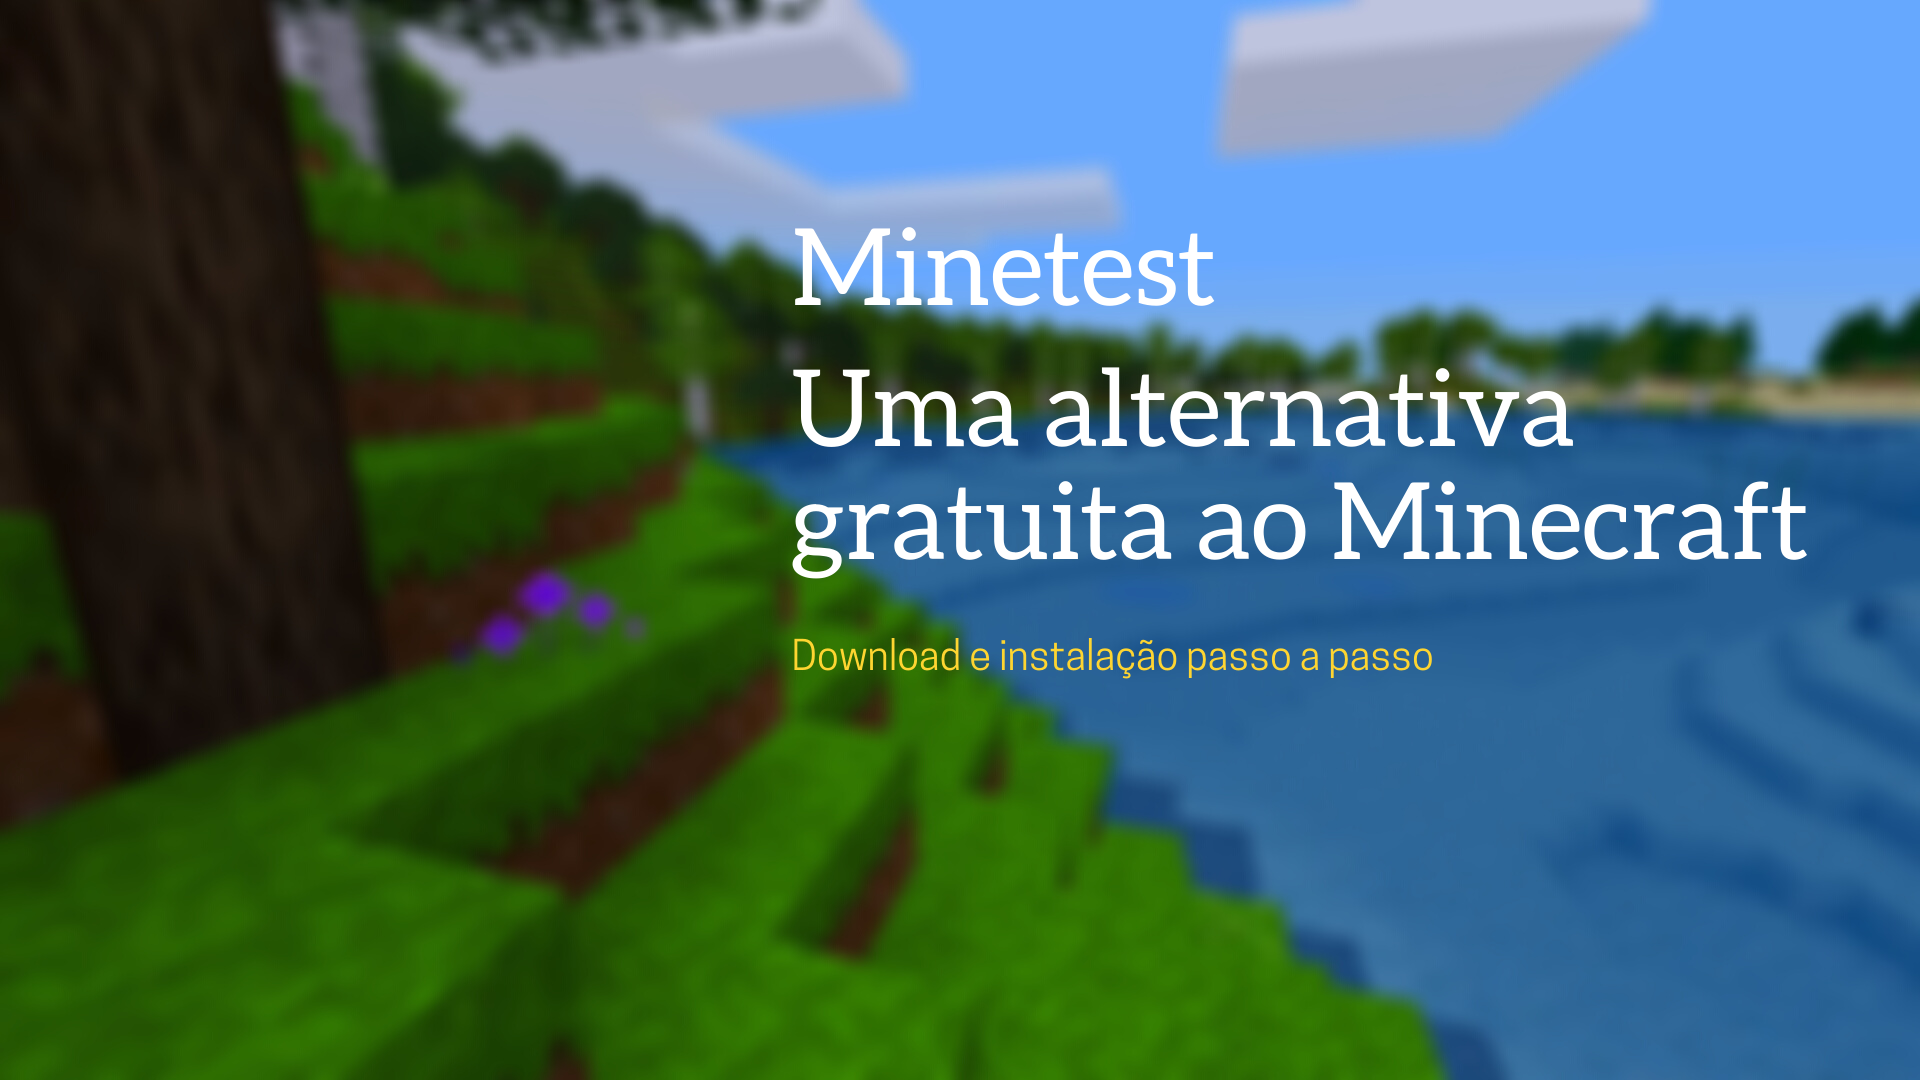 Jogos parecidos com Minecraft: 8 Boas Alternativas (Android e PC)